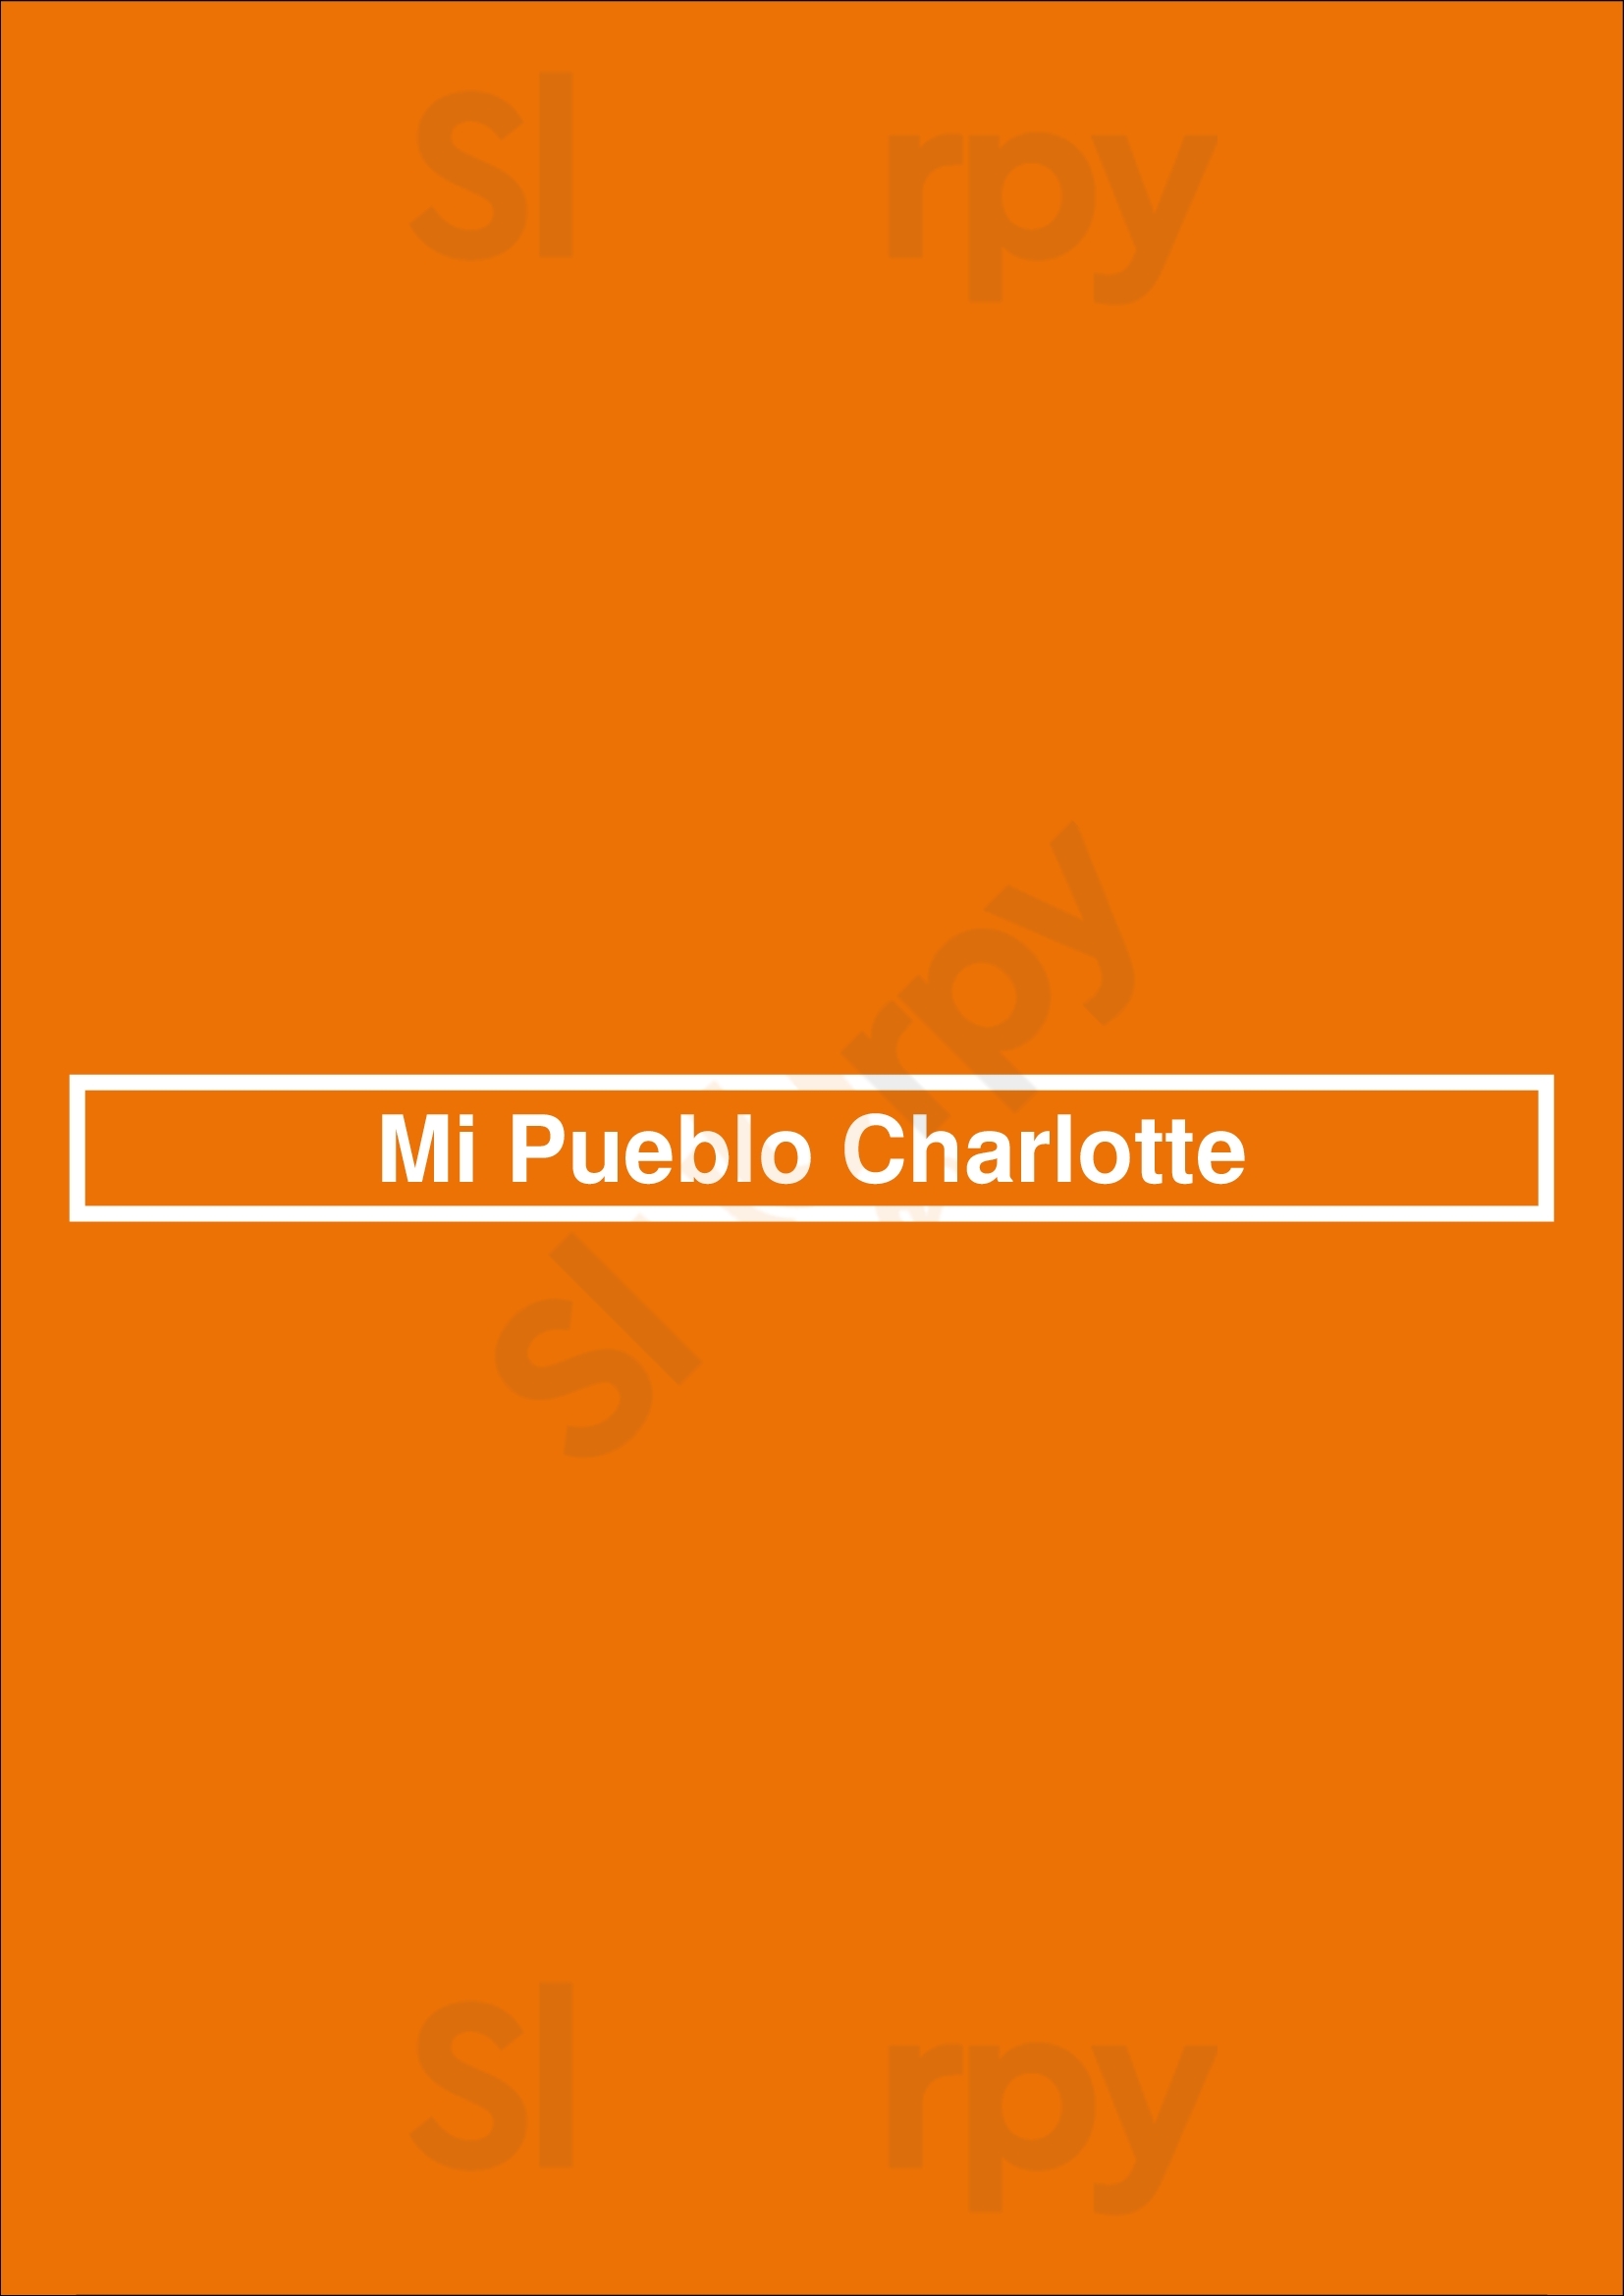 Mi Pueblo Charlotte Charlotte Menu - 1